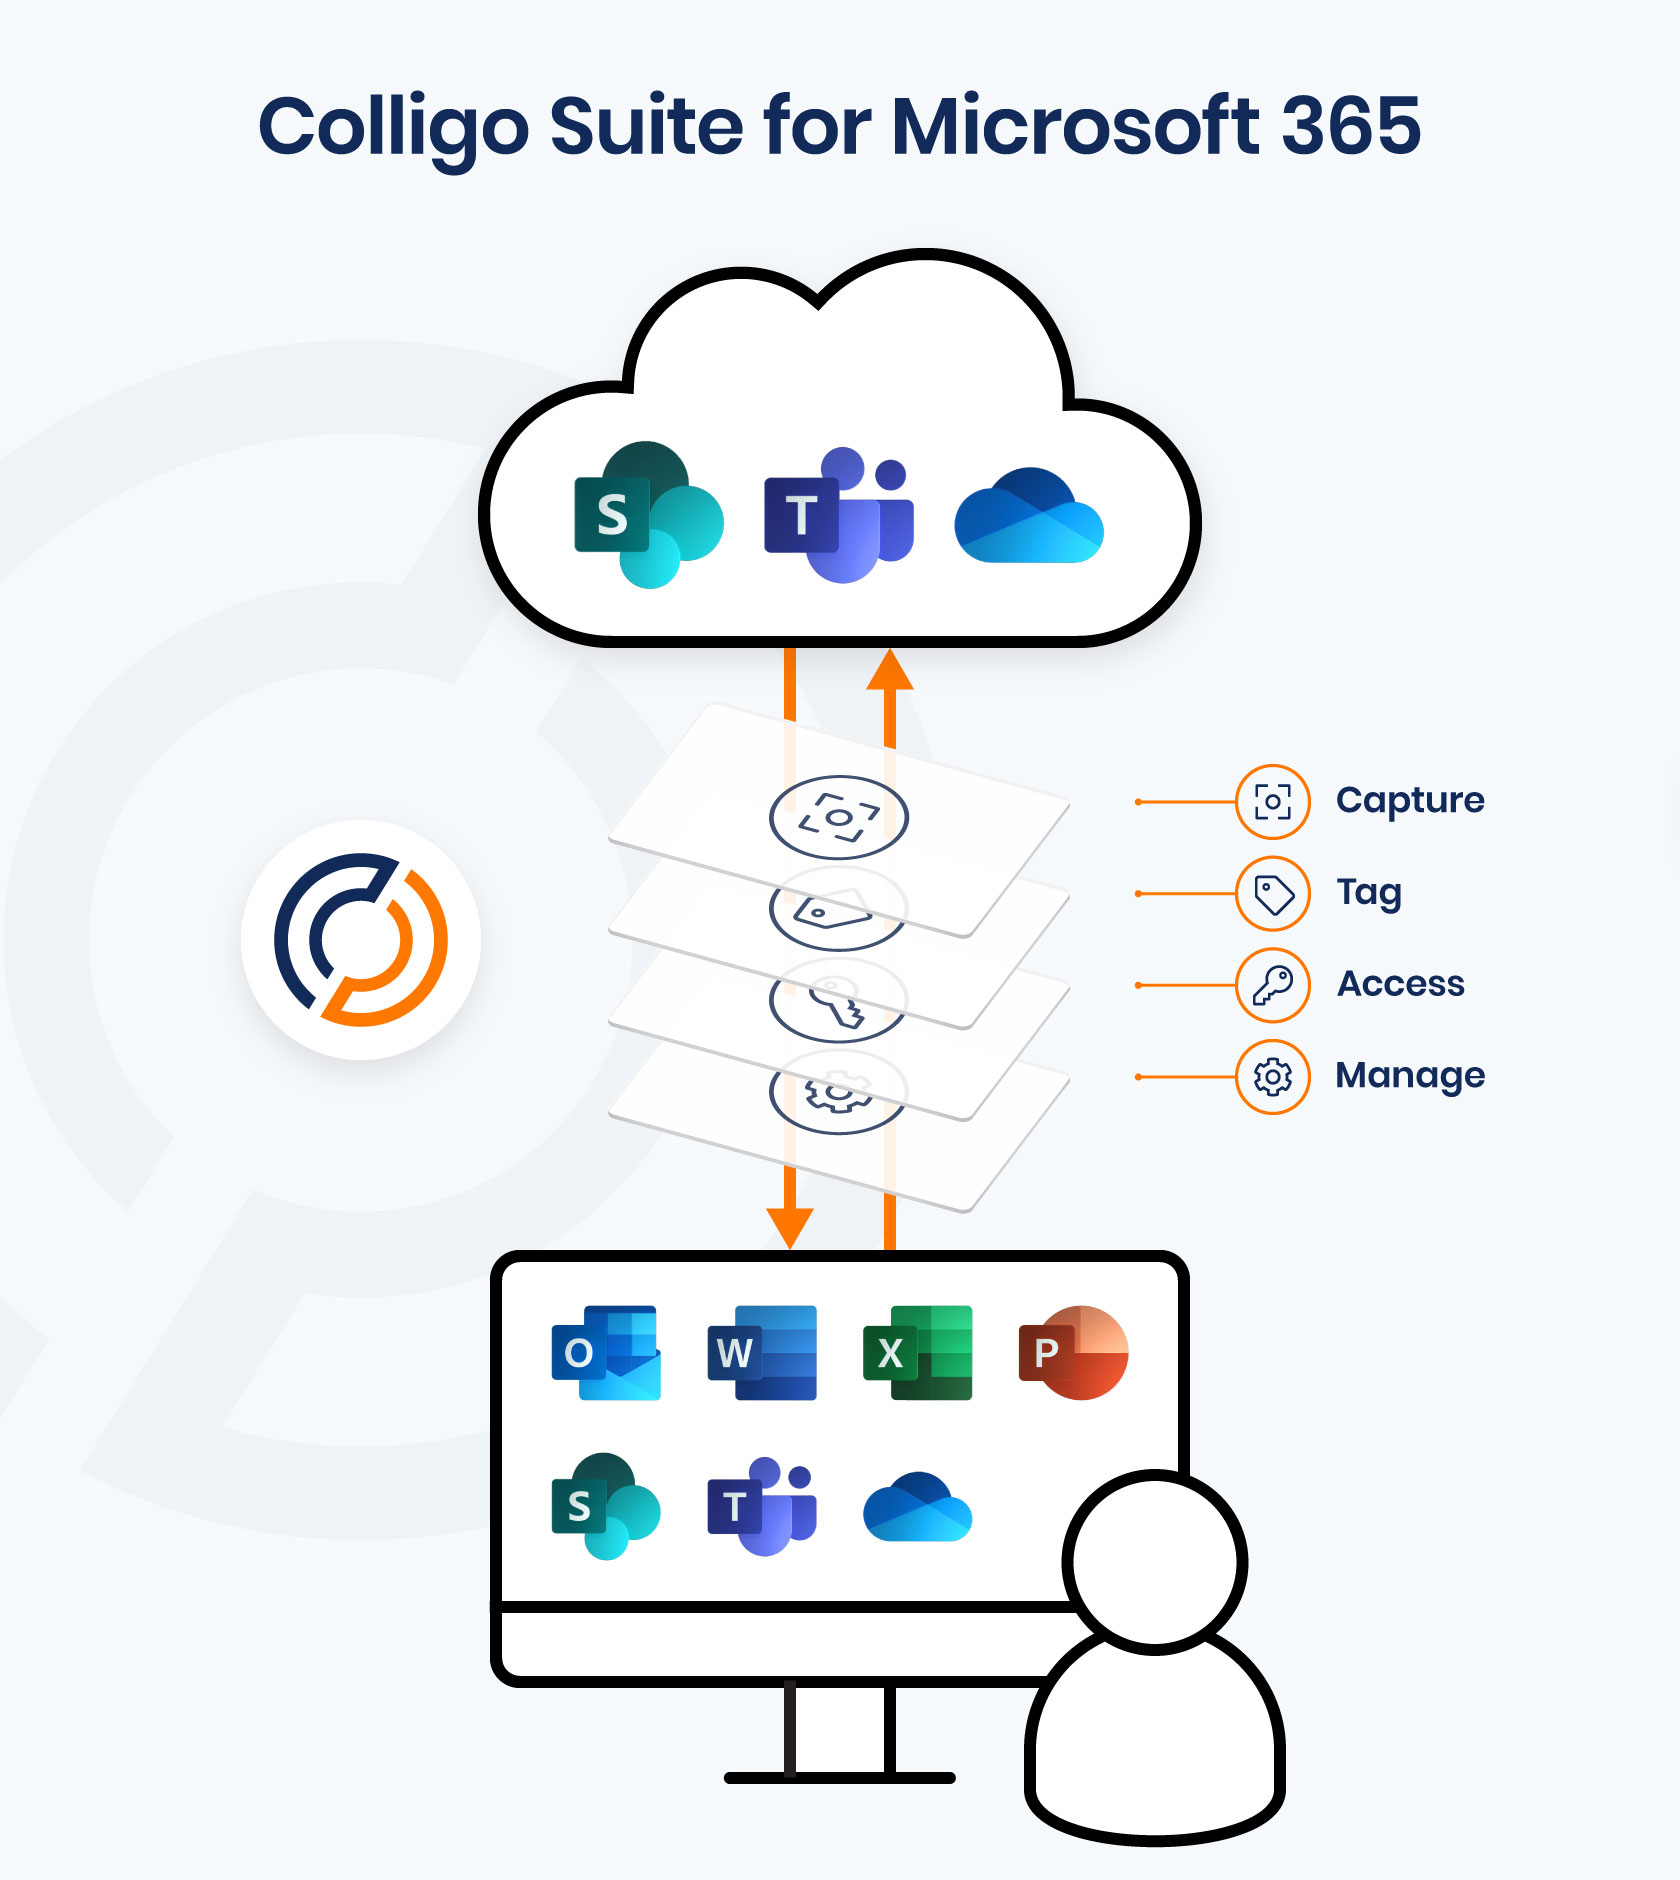 Colligo Suite for Microsoft 365 image - SharePoint app